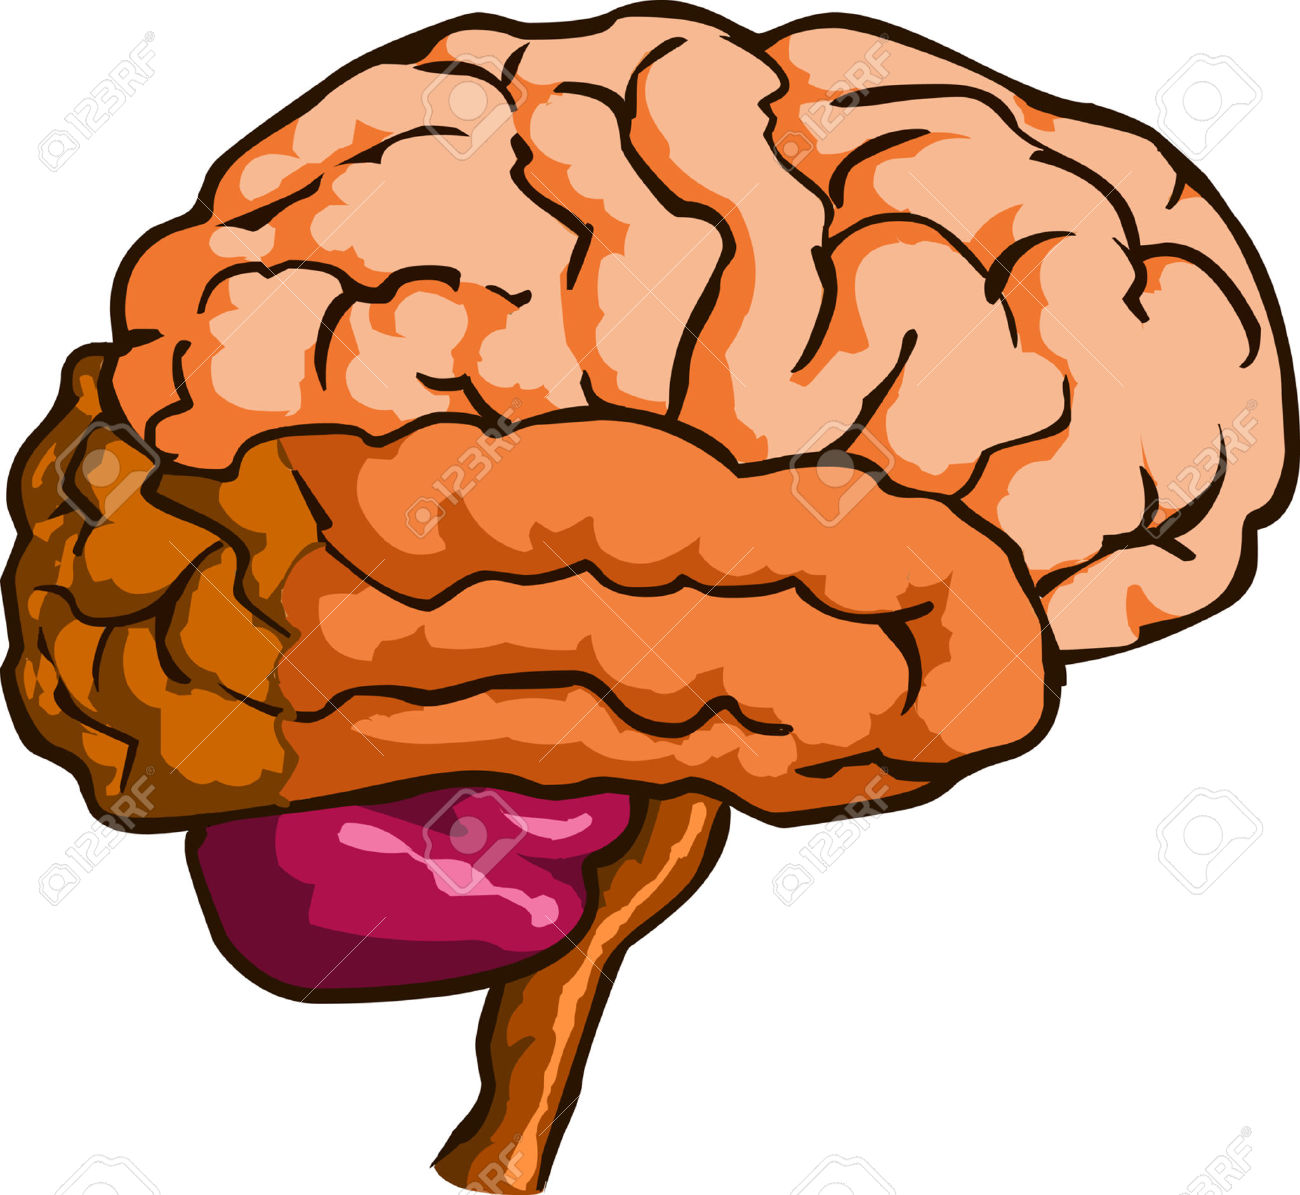 clipart brain